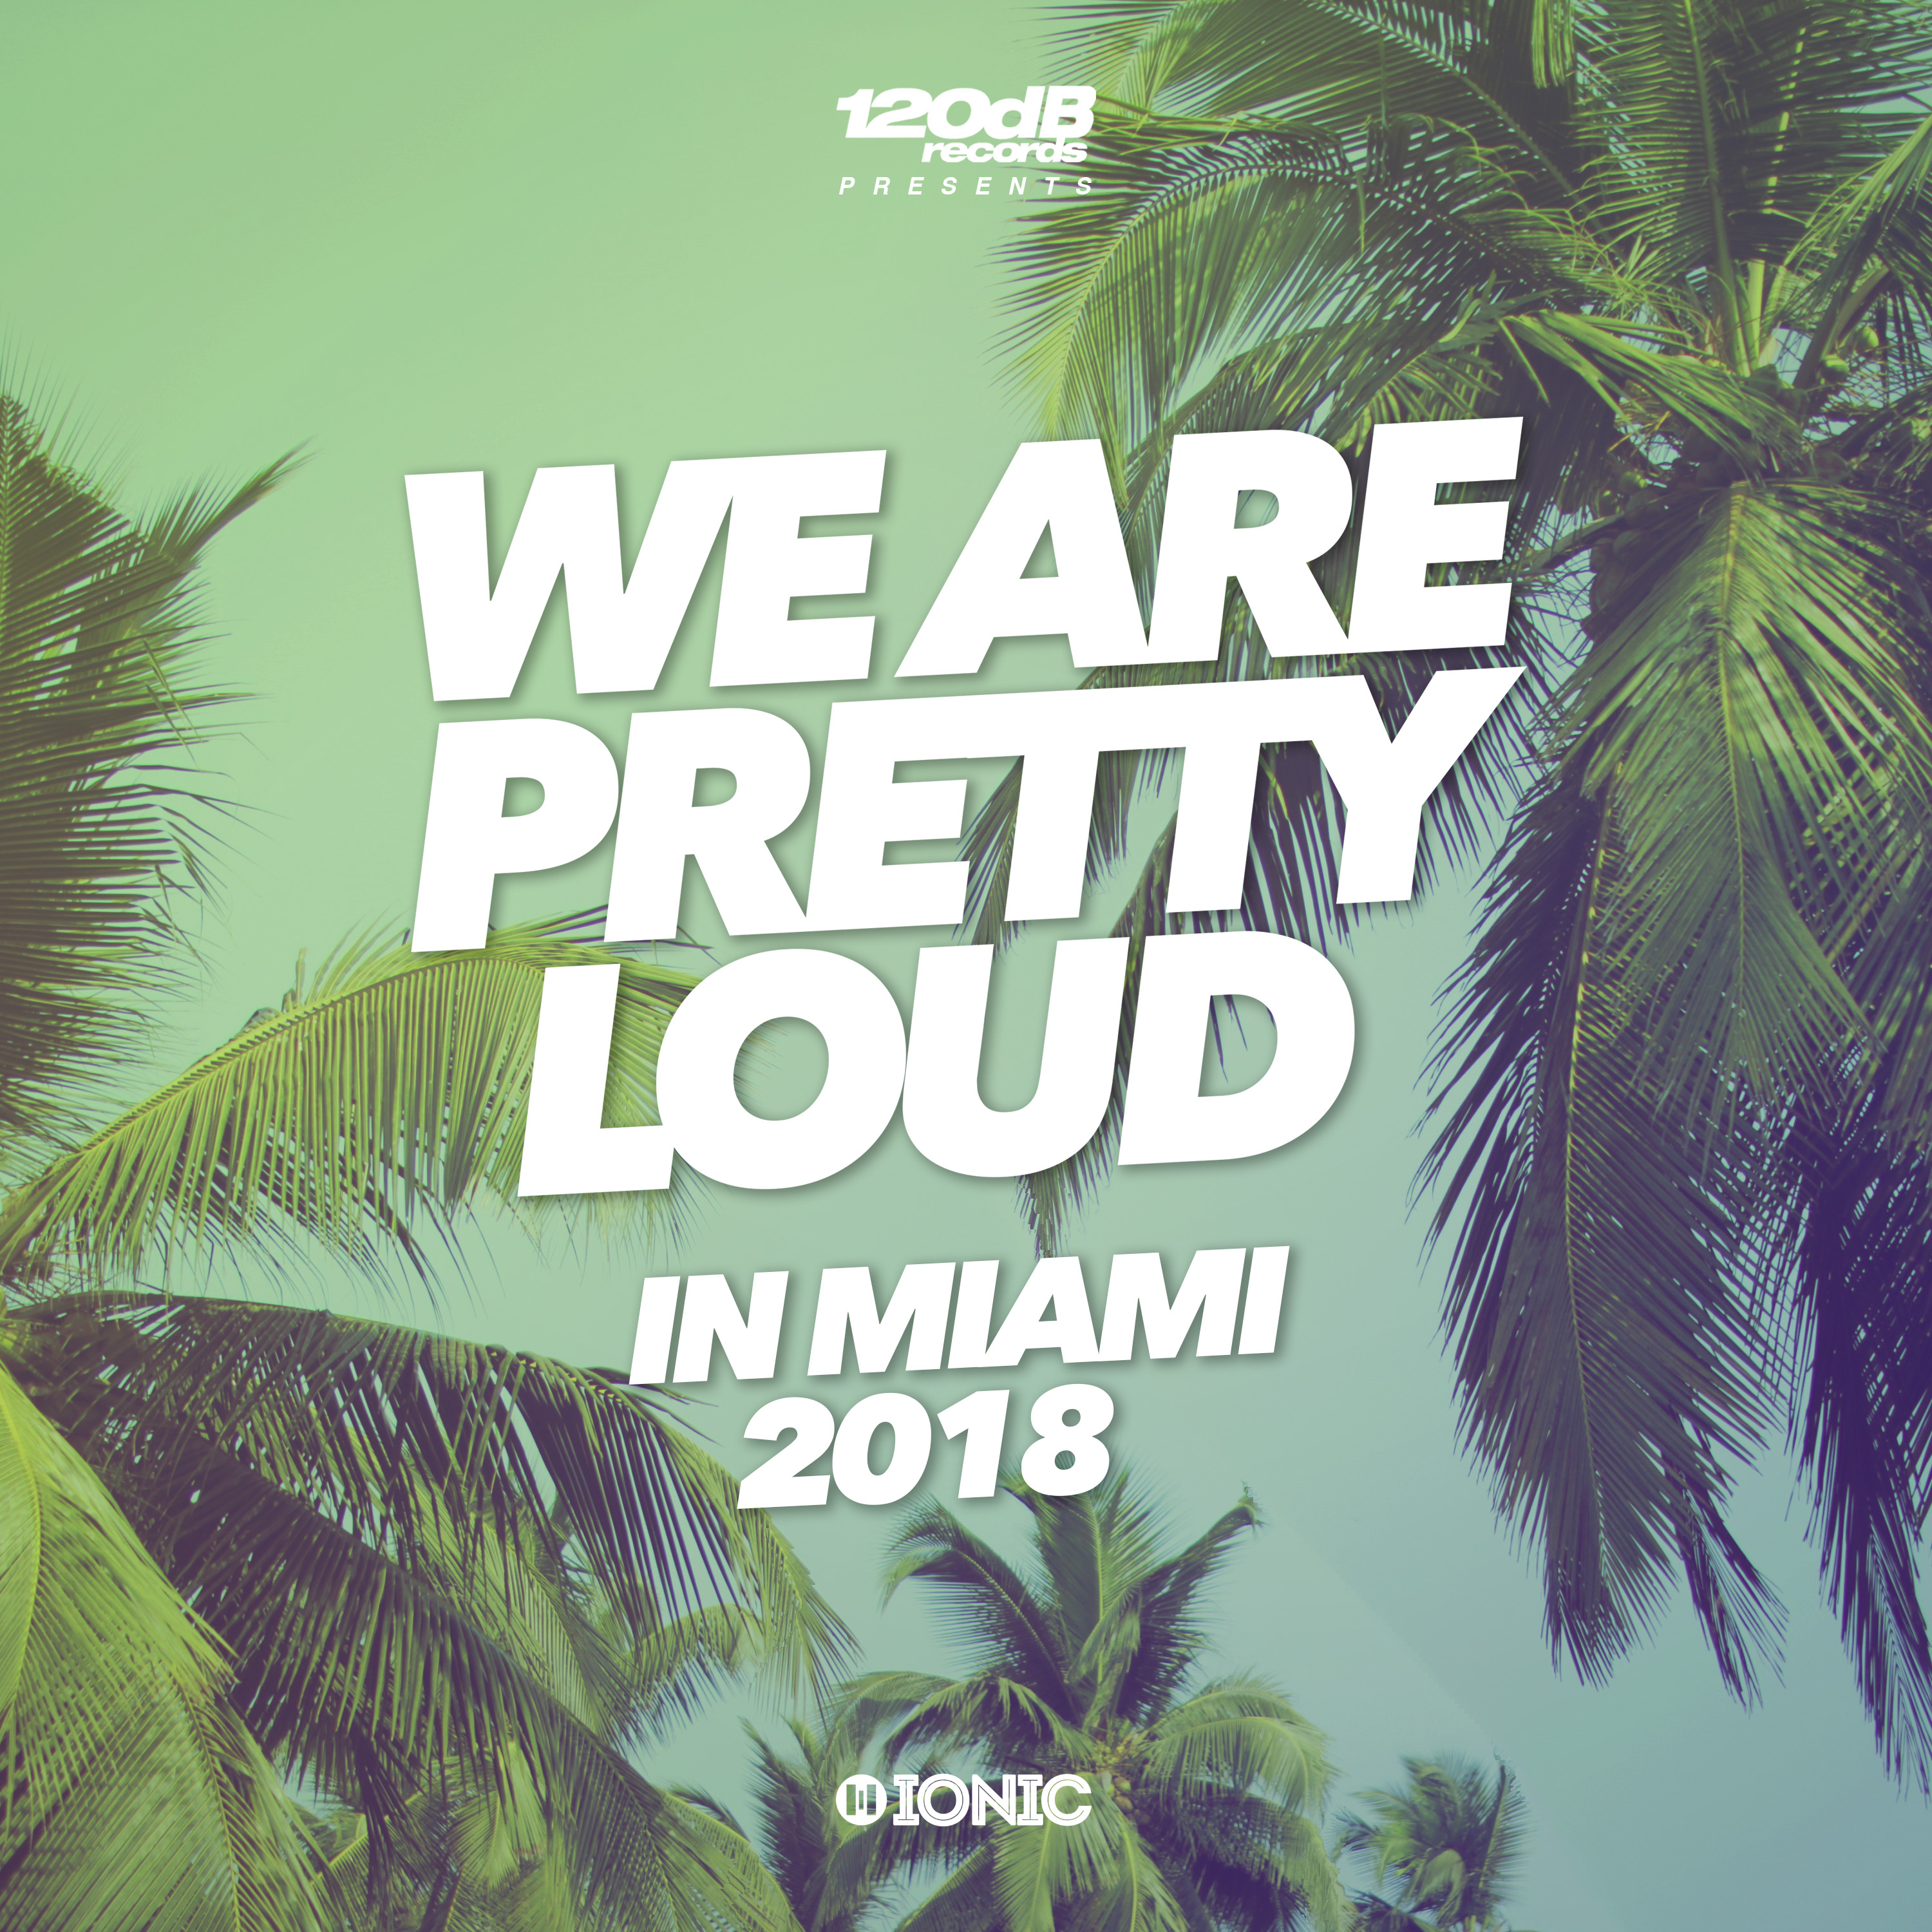 We Are Pretty Loud in Miami 2018